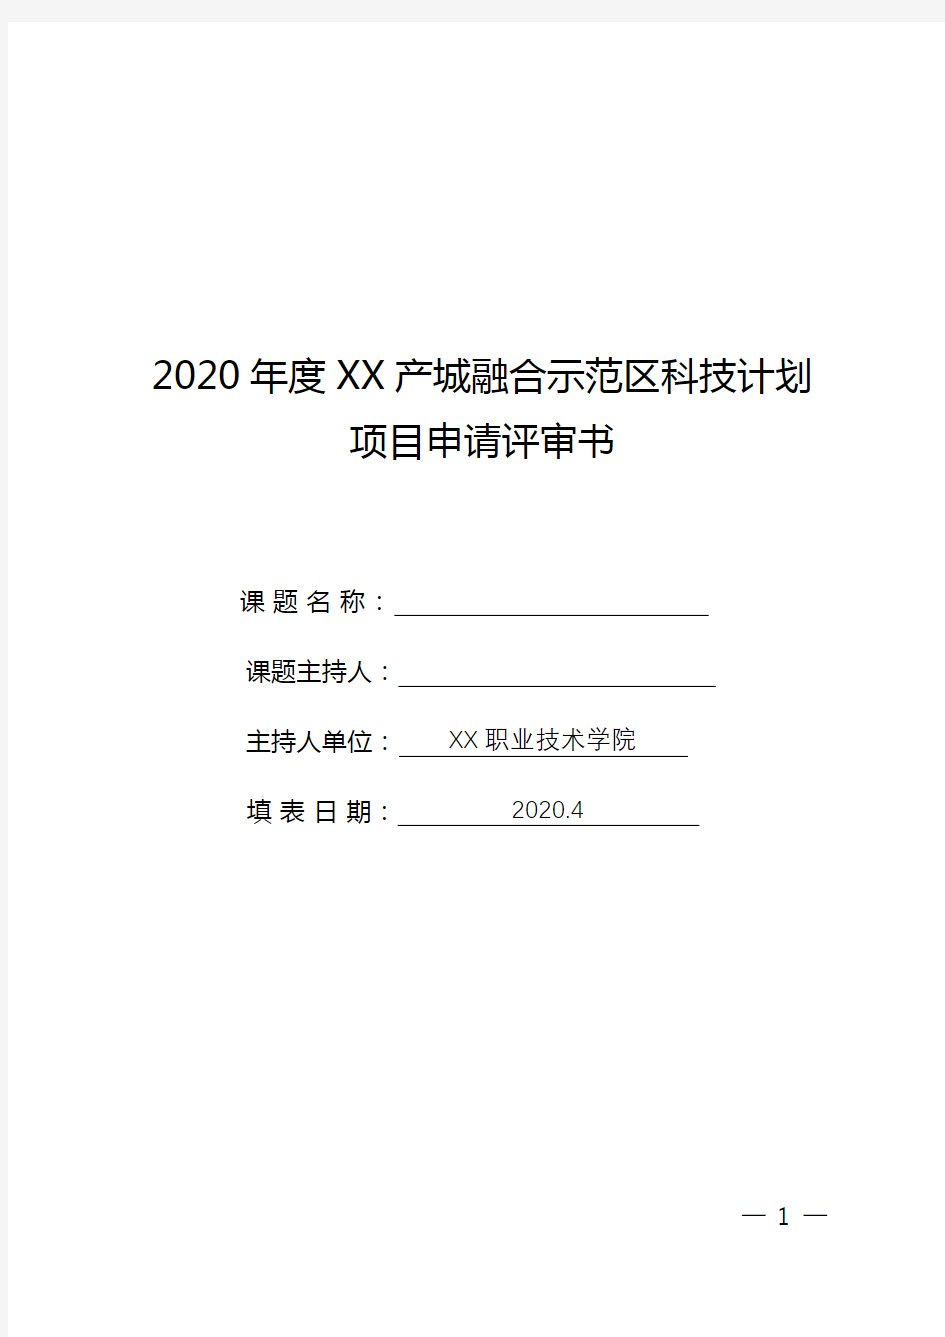 2020年度XX产城融合示范区科技计划项目申请评审书【模板】